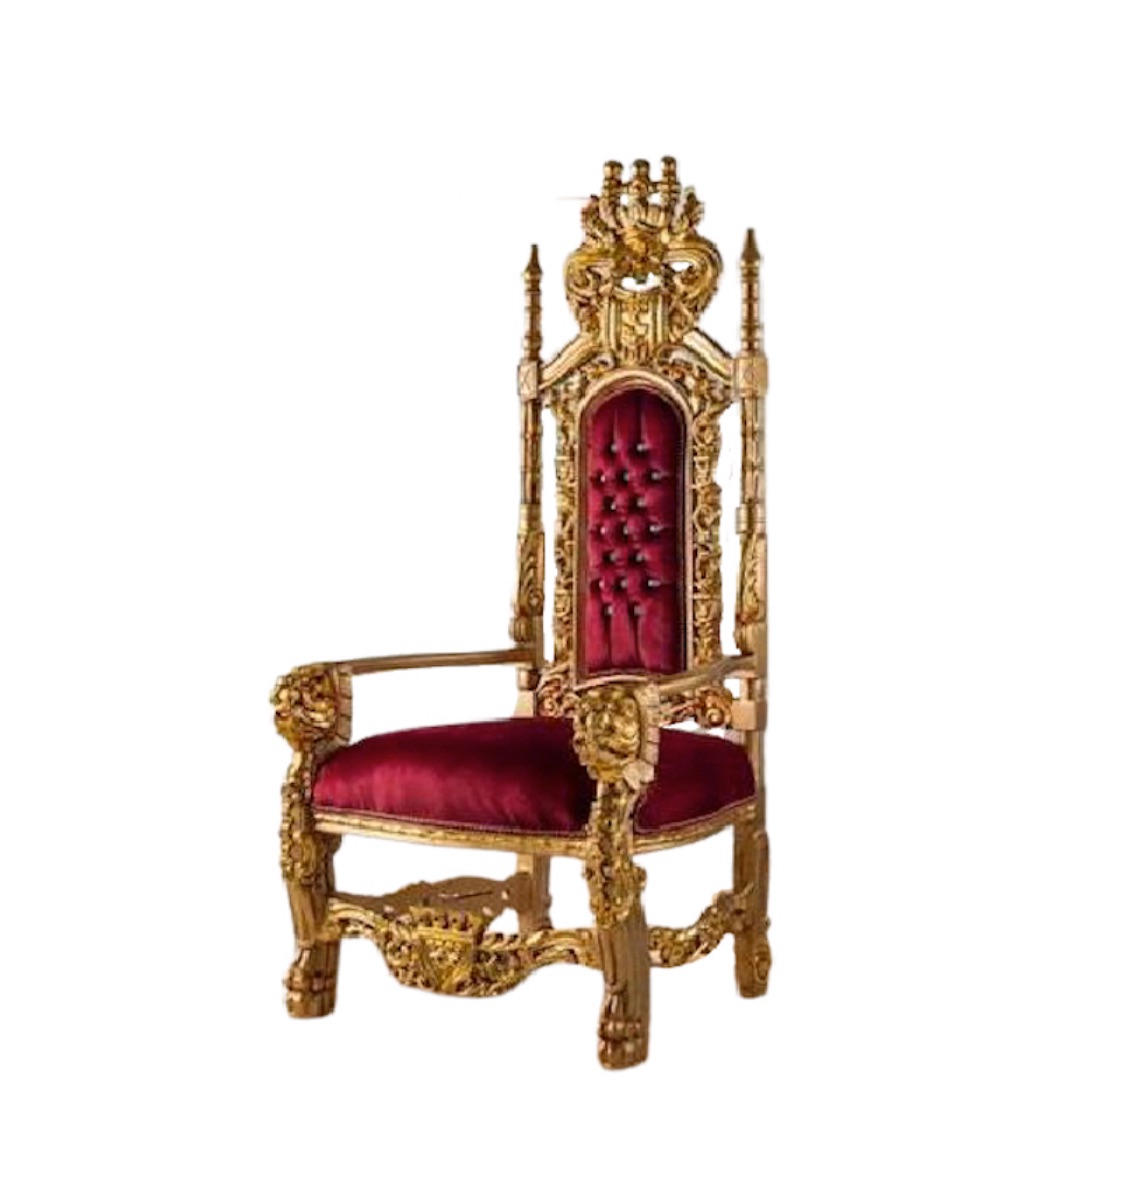 European Royal style Throne